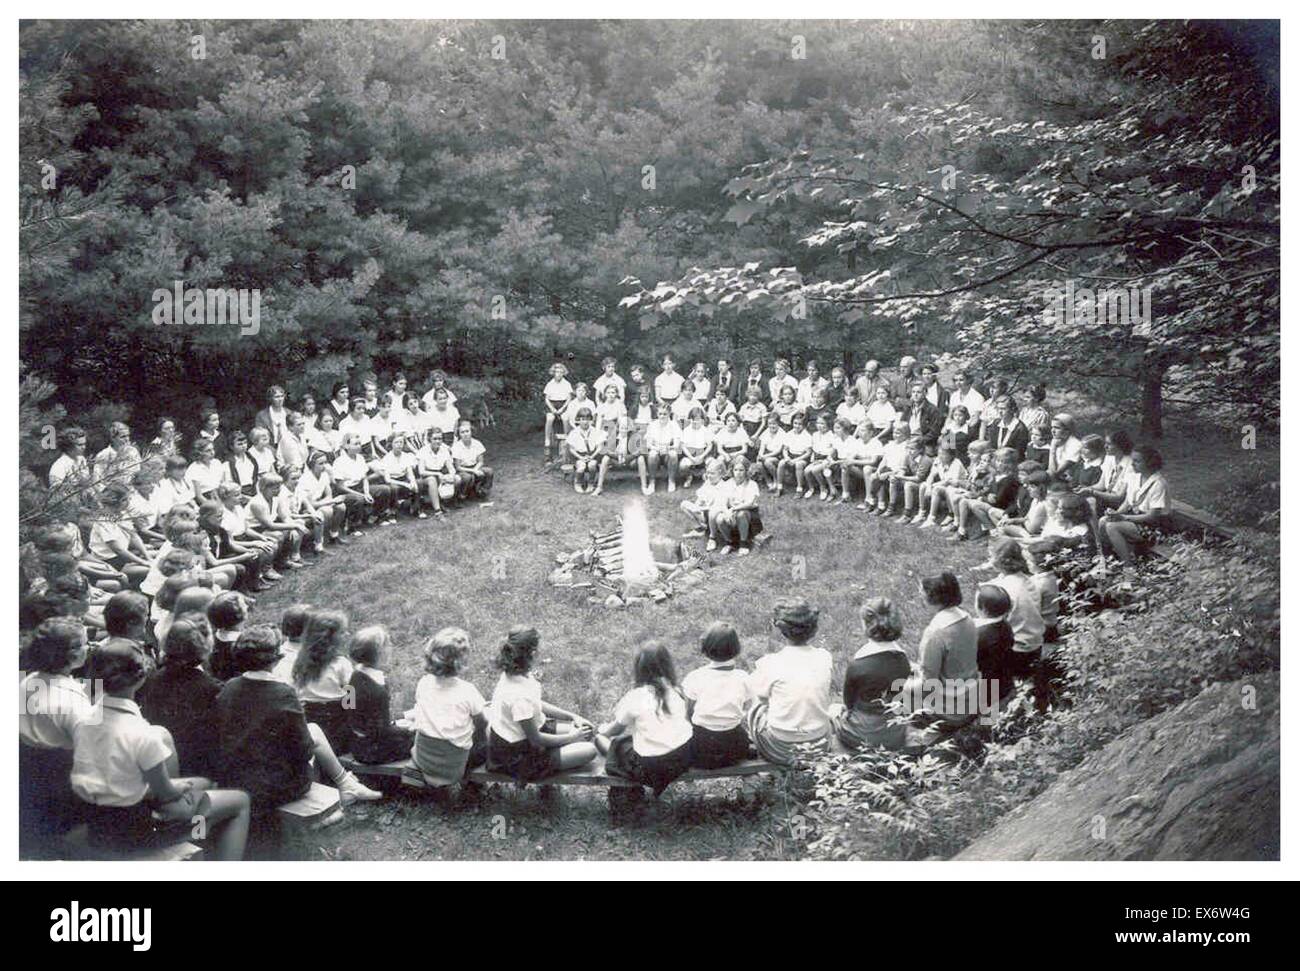 American Summer Camp im Jahr 1935 seit fast 100 Jahren am Aloha Hive in Fairlee, Vermont haben ihren Tag mit einem Gefühl von Magie und Gemeinschaft im Kreis der Abend beendet. Stockfoto